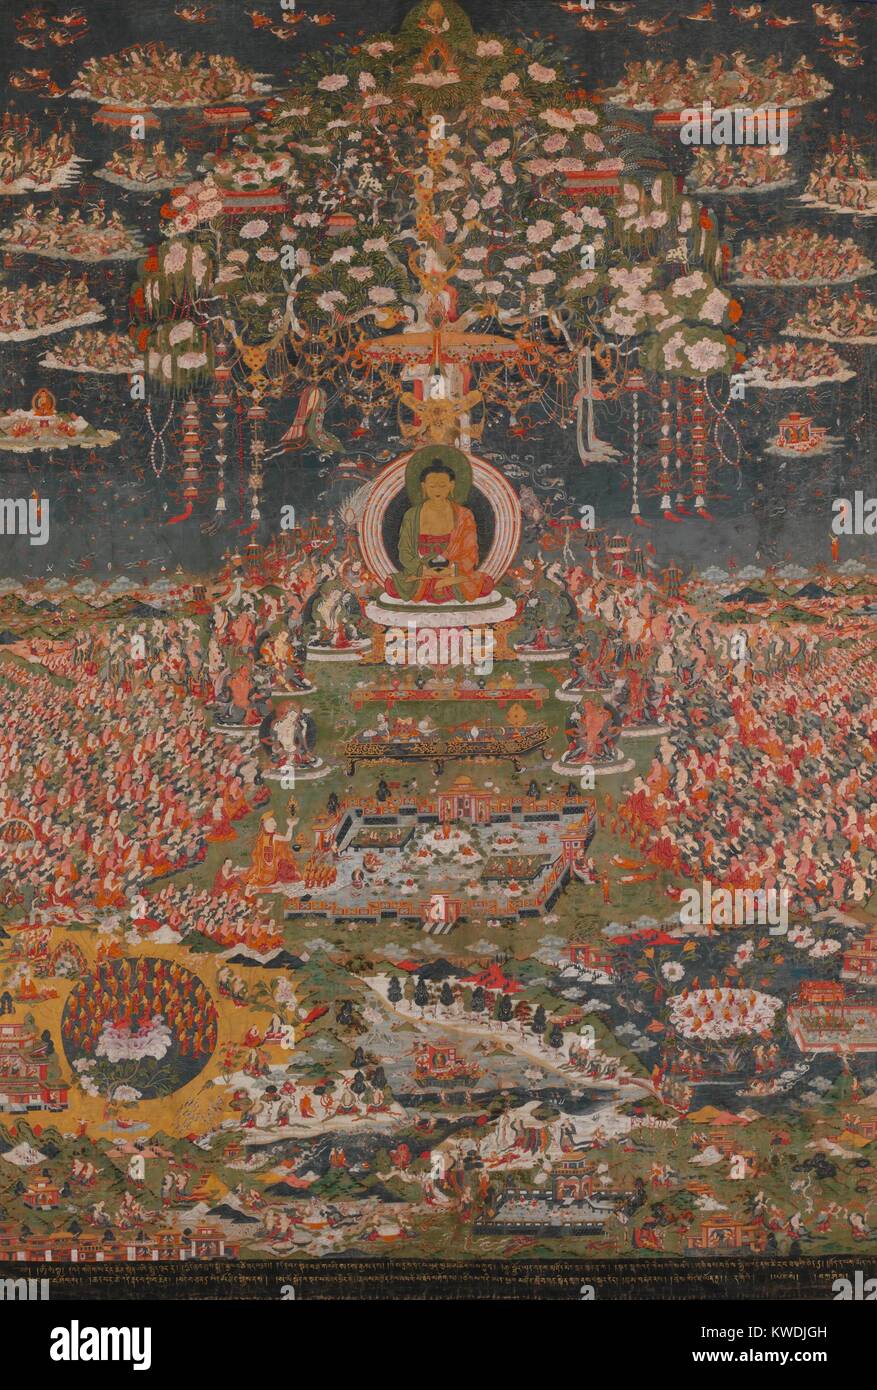 AMITABHA, il buddha della Western Pura Terra, Tibetani, buddista, xviii c., pittura. Amitayus, il Buddha della vita eterna, nel suo paradiso, Sukhavati, il Western Pura Terra. Il cielo è riempito con semidei che spargono fiori. Appena al di sotto di Amitayus sono gli otto grandi bodhisattvas. In fondo il paesaggio sono le piscine da cui il purificato sono rinati (BSLOC 2017 16 13) Foto Stock